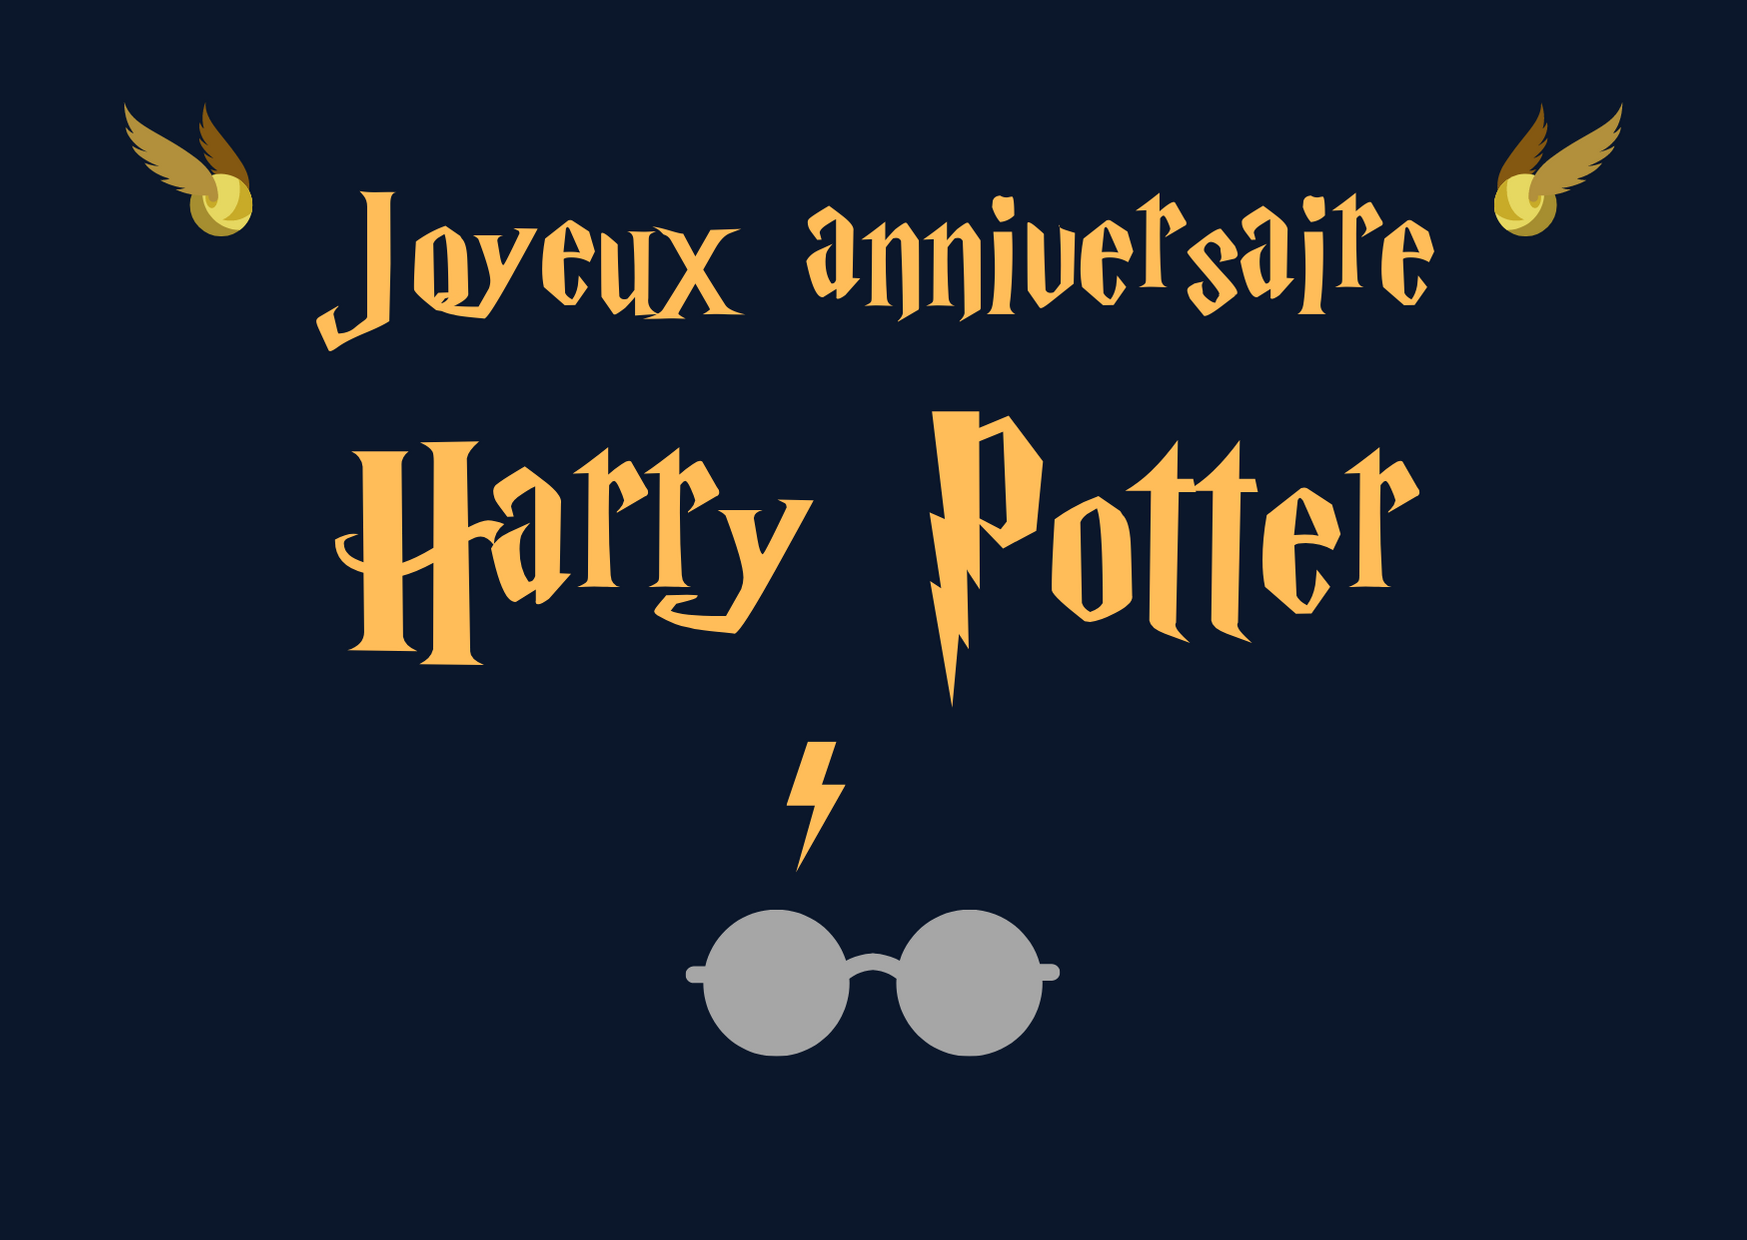 Harry Potter a 40 ans ce 31 juillet 2020, joyeux anniversaire !